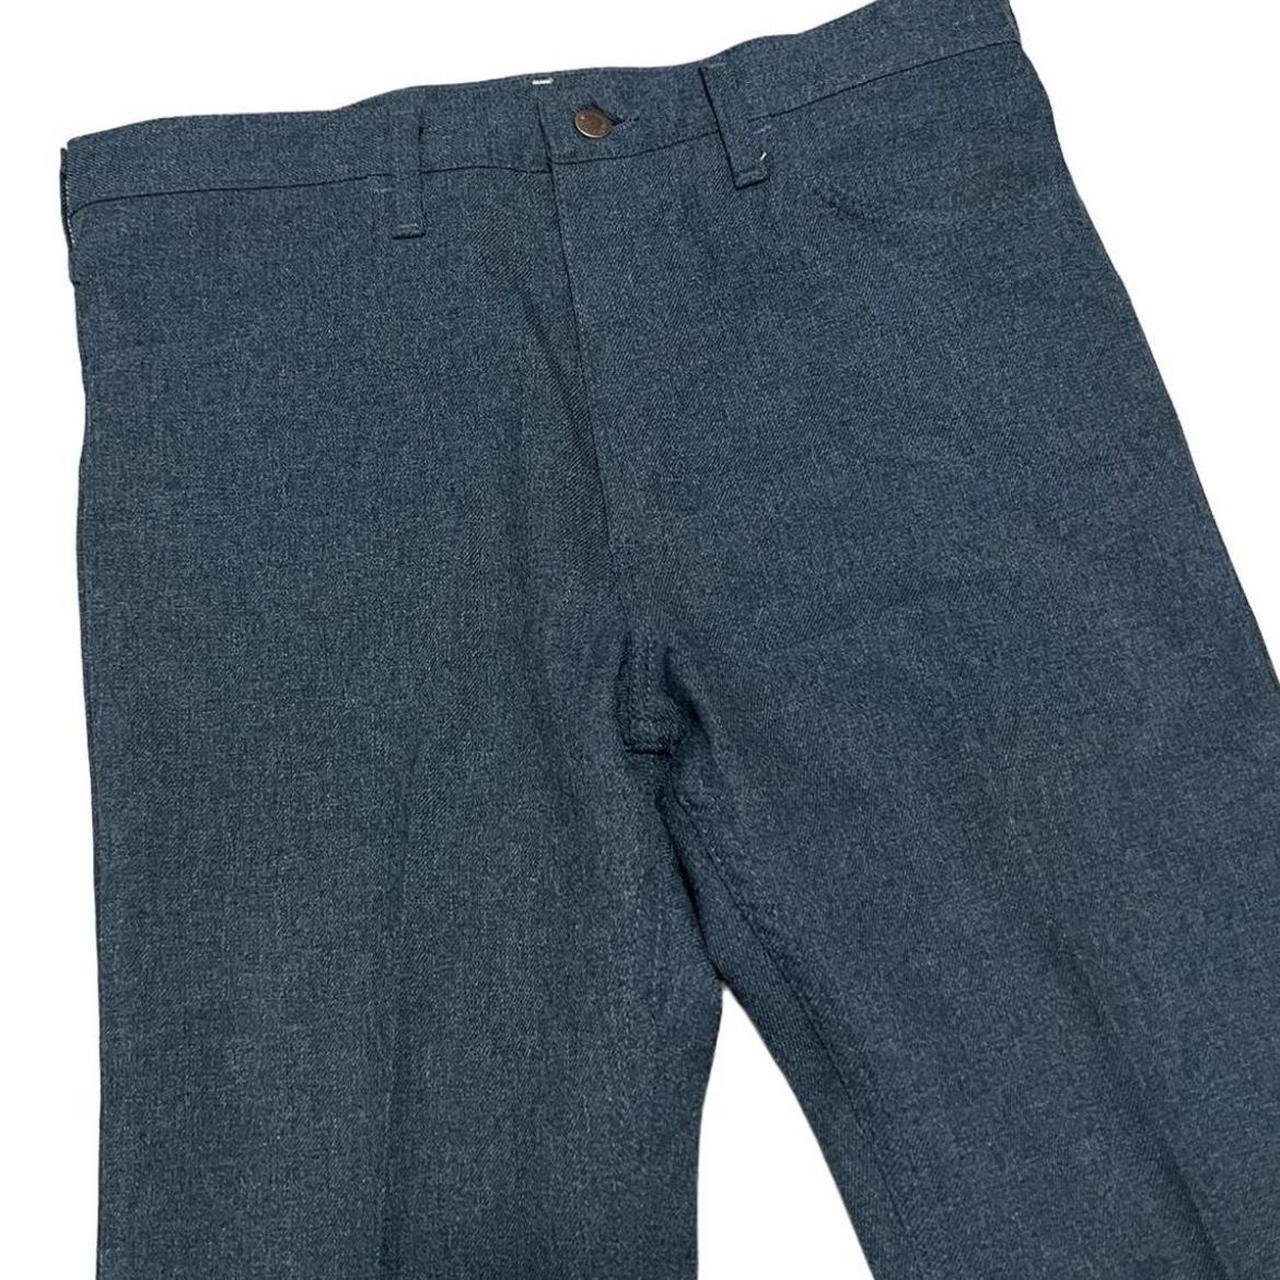 Vintage 80’s wrangler pants! Bootcut and super... - Depop